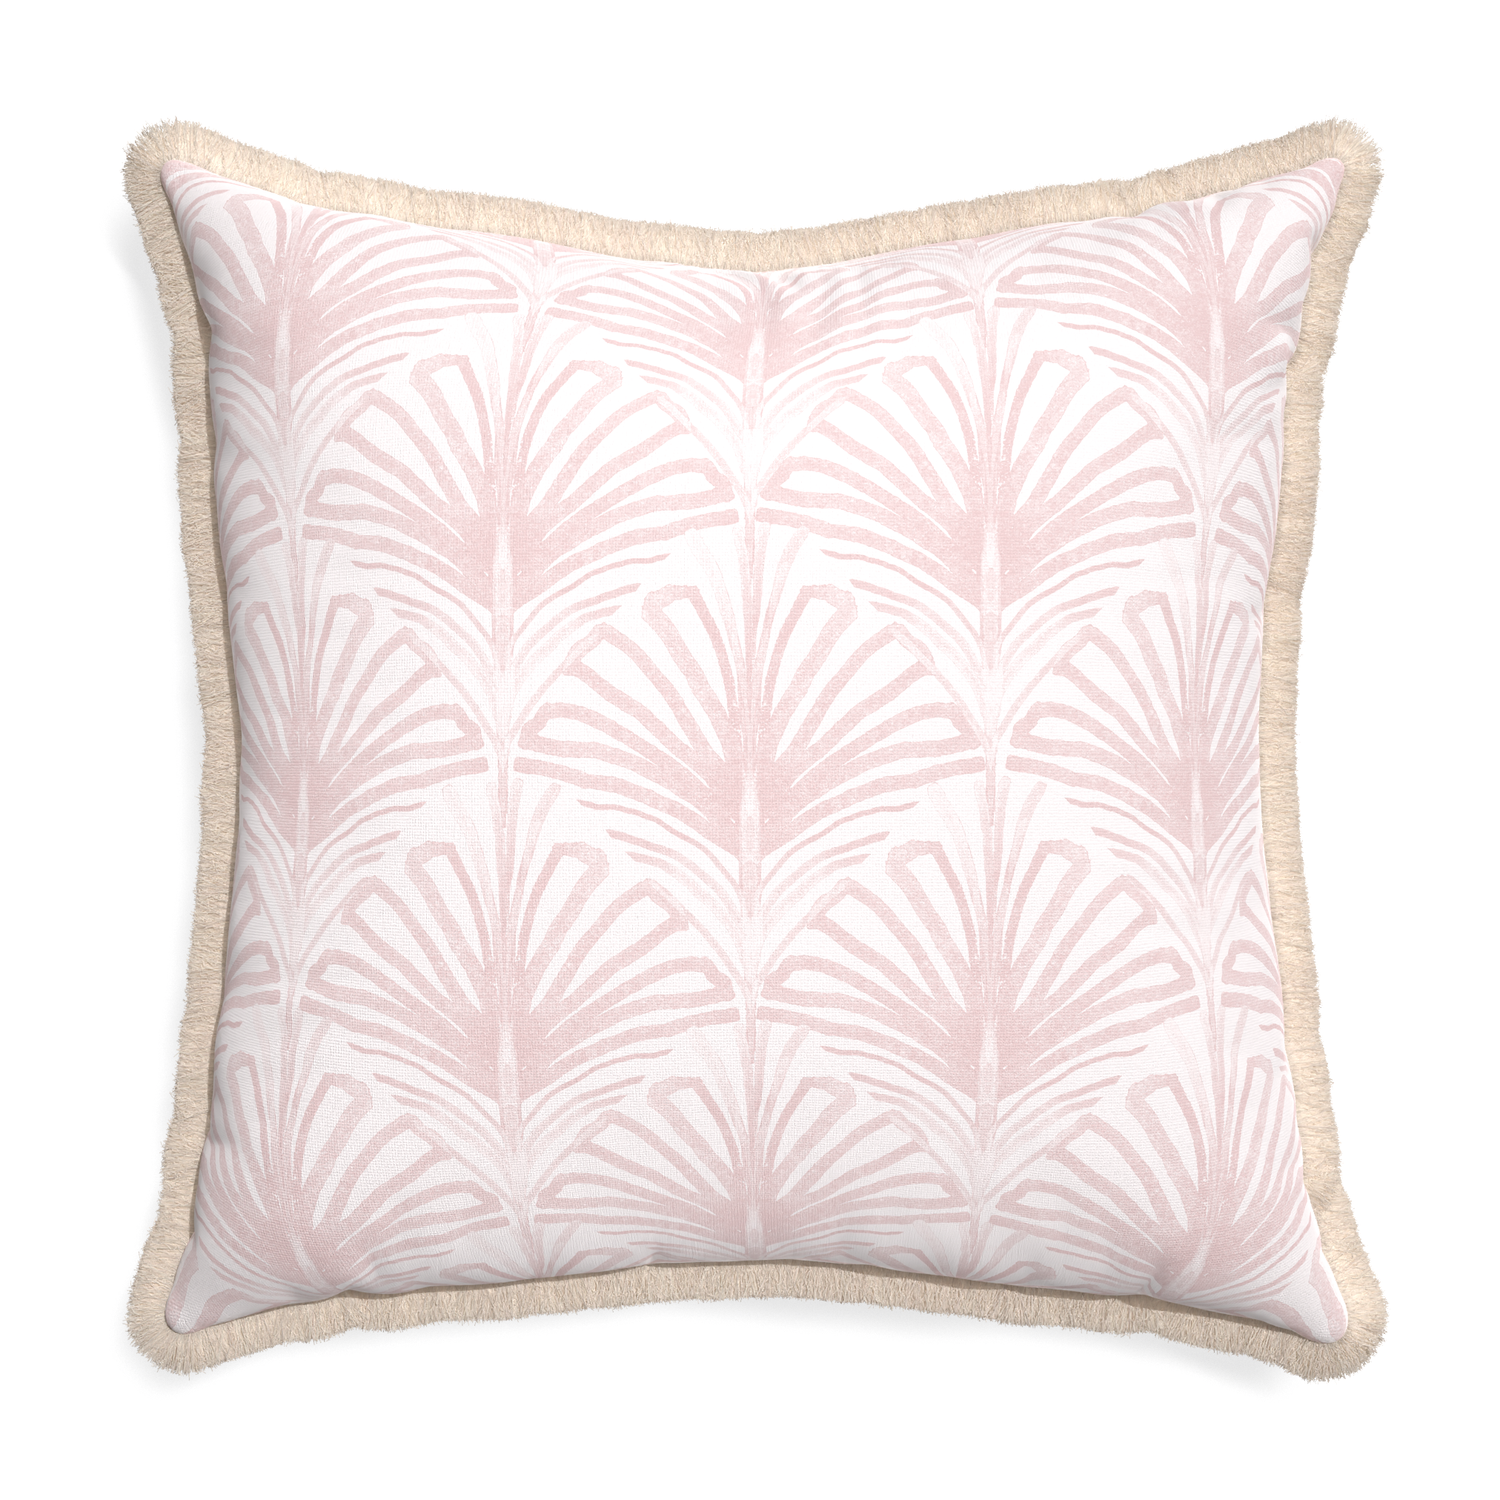 Euro-sham suzy rose custom pillow with cream fringe on white background